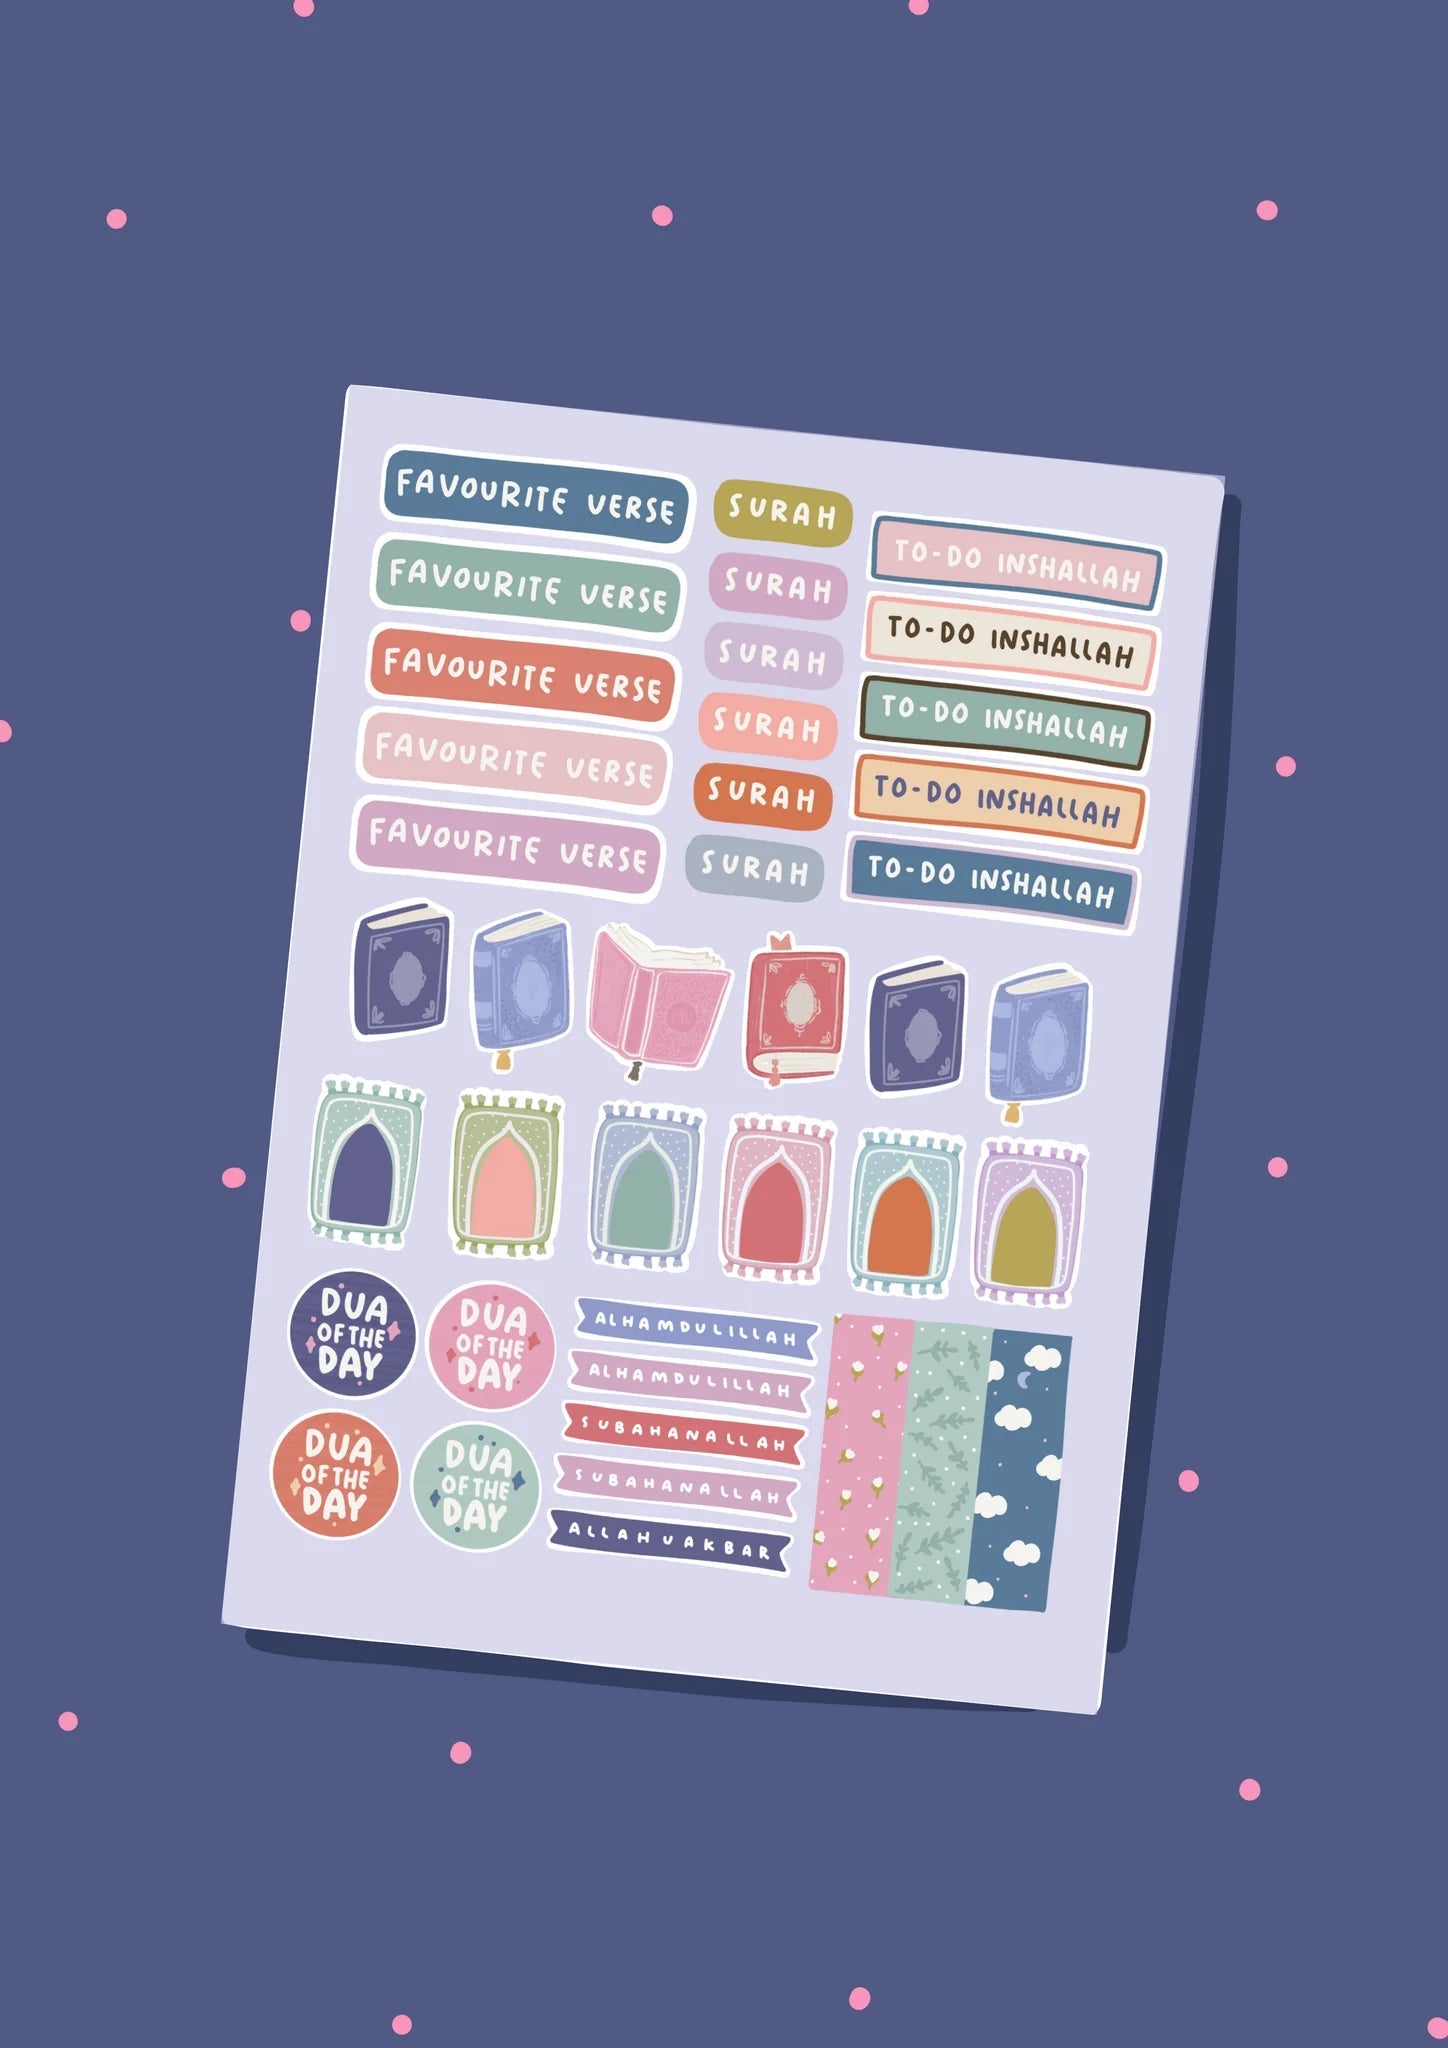 Ramadan Journal Sticker Sheet - Noor Books